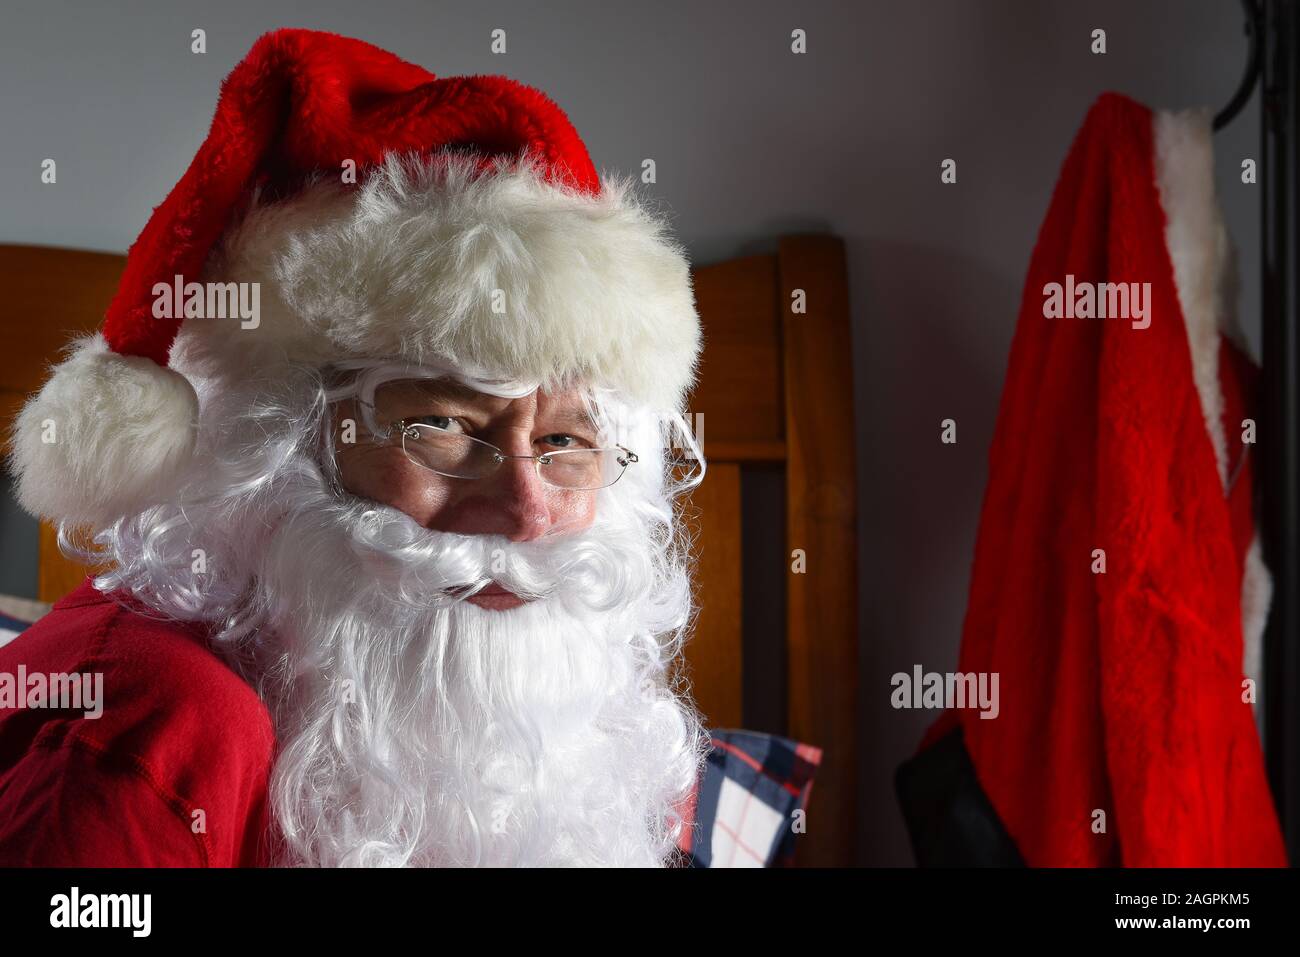 Santa Claus saß auf seinem Bett in seinem Long Johns mit seinem roten Anzug hängt an einem Haken im Hintergrund. Stockfoto